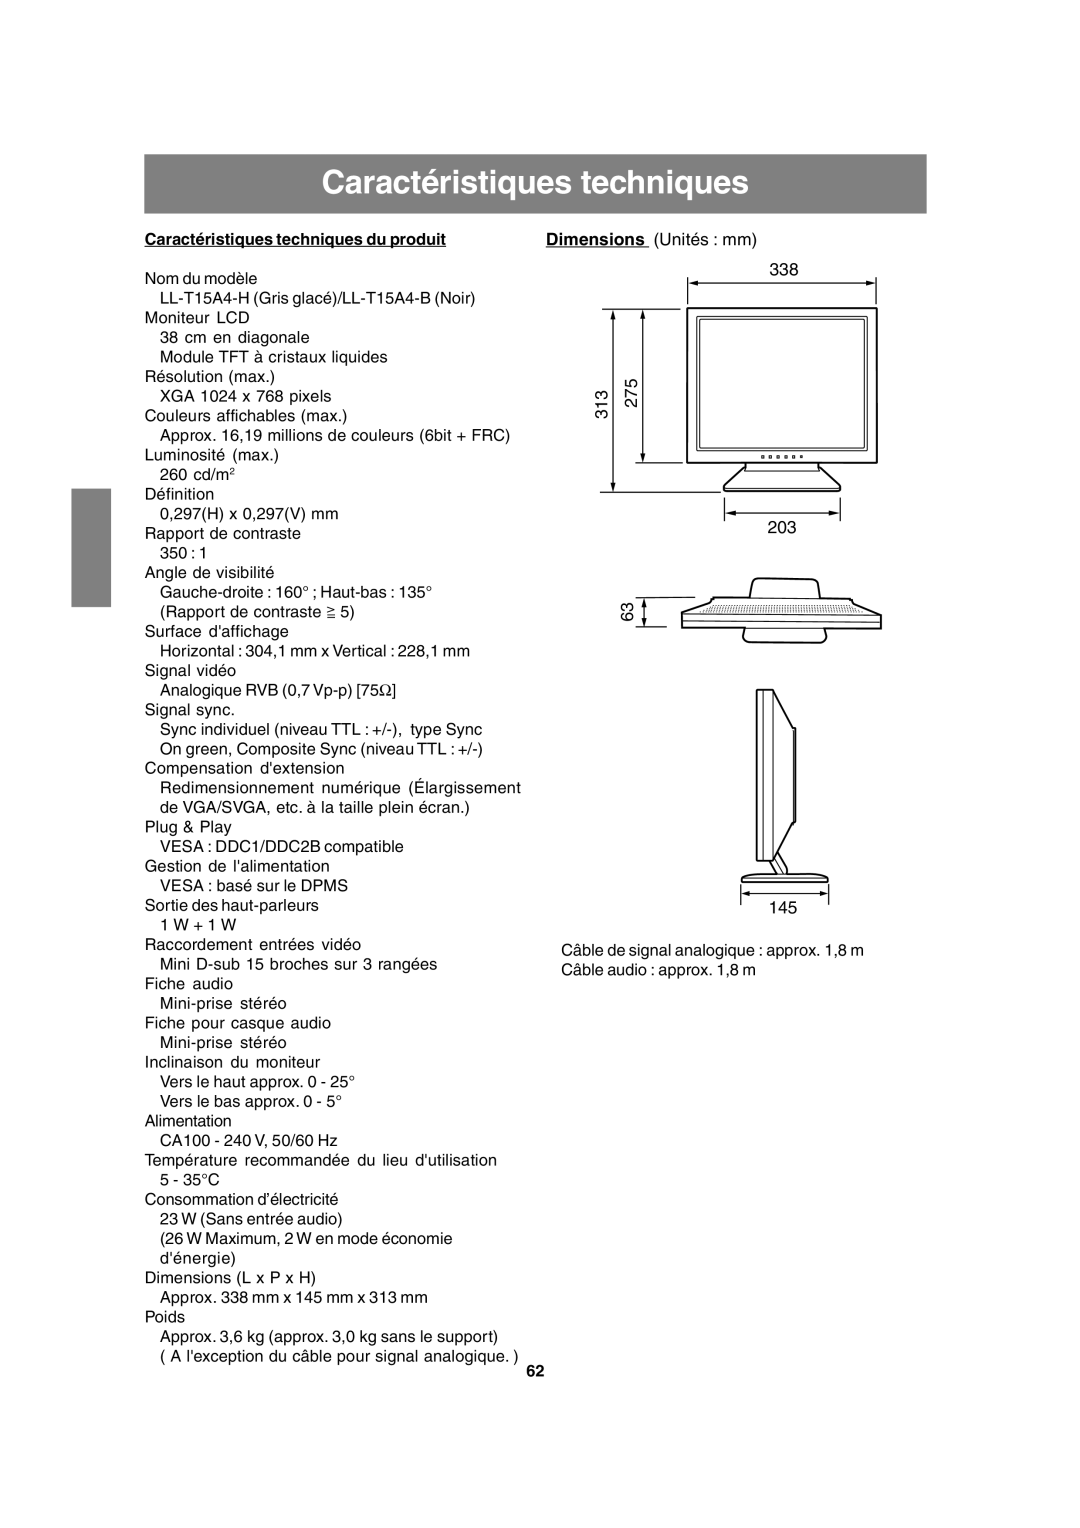 Sharp LL-T15A4 operation manual Dimensions Unités mm 338, Caractéristiques techniques du produit 